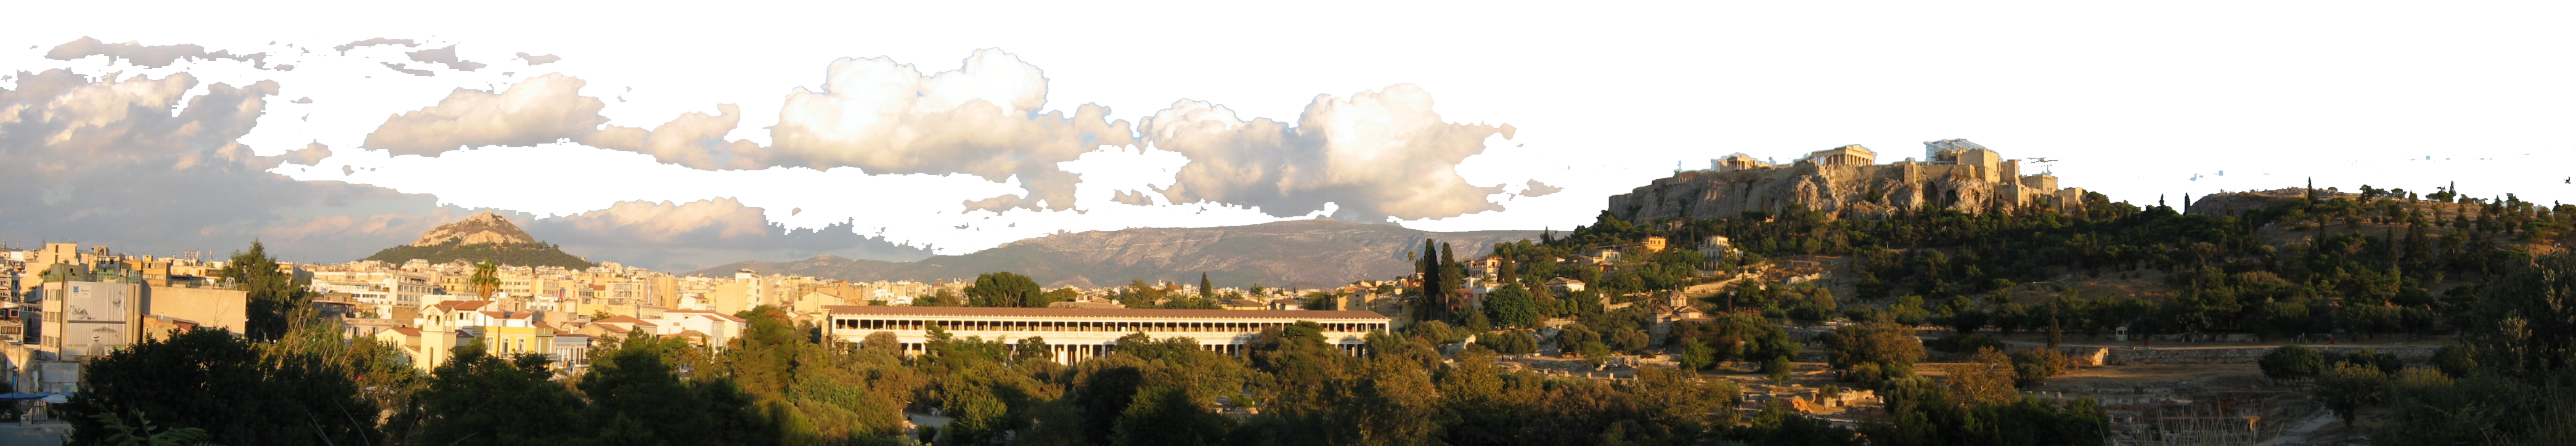 Colonie de vacances en Grèce